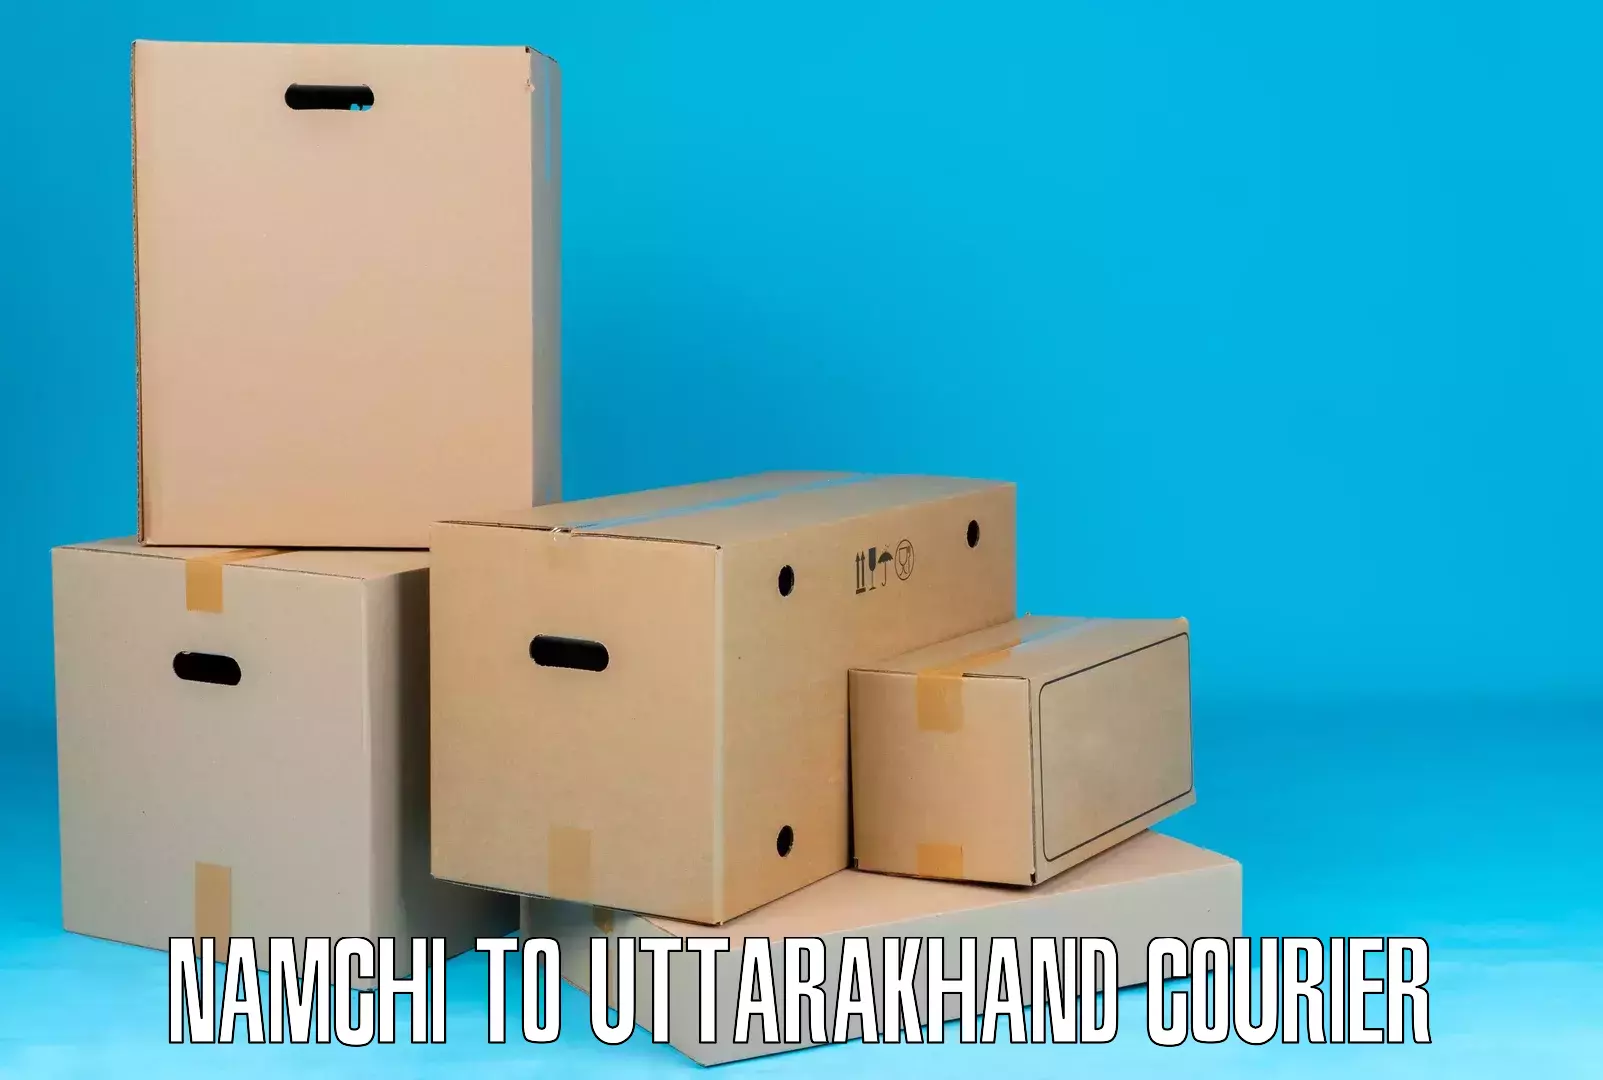 Nationwide courier service Namchi to Uttarakhand